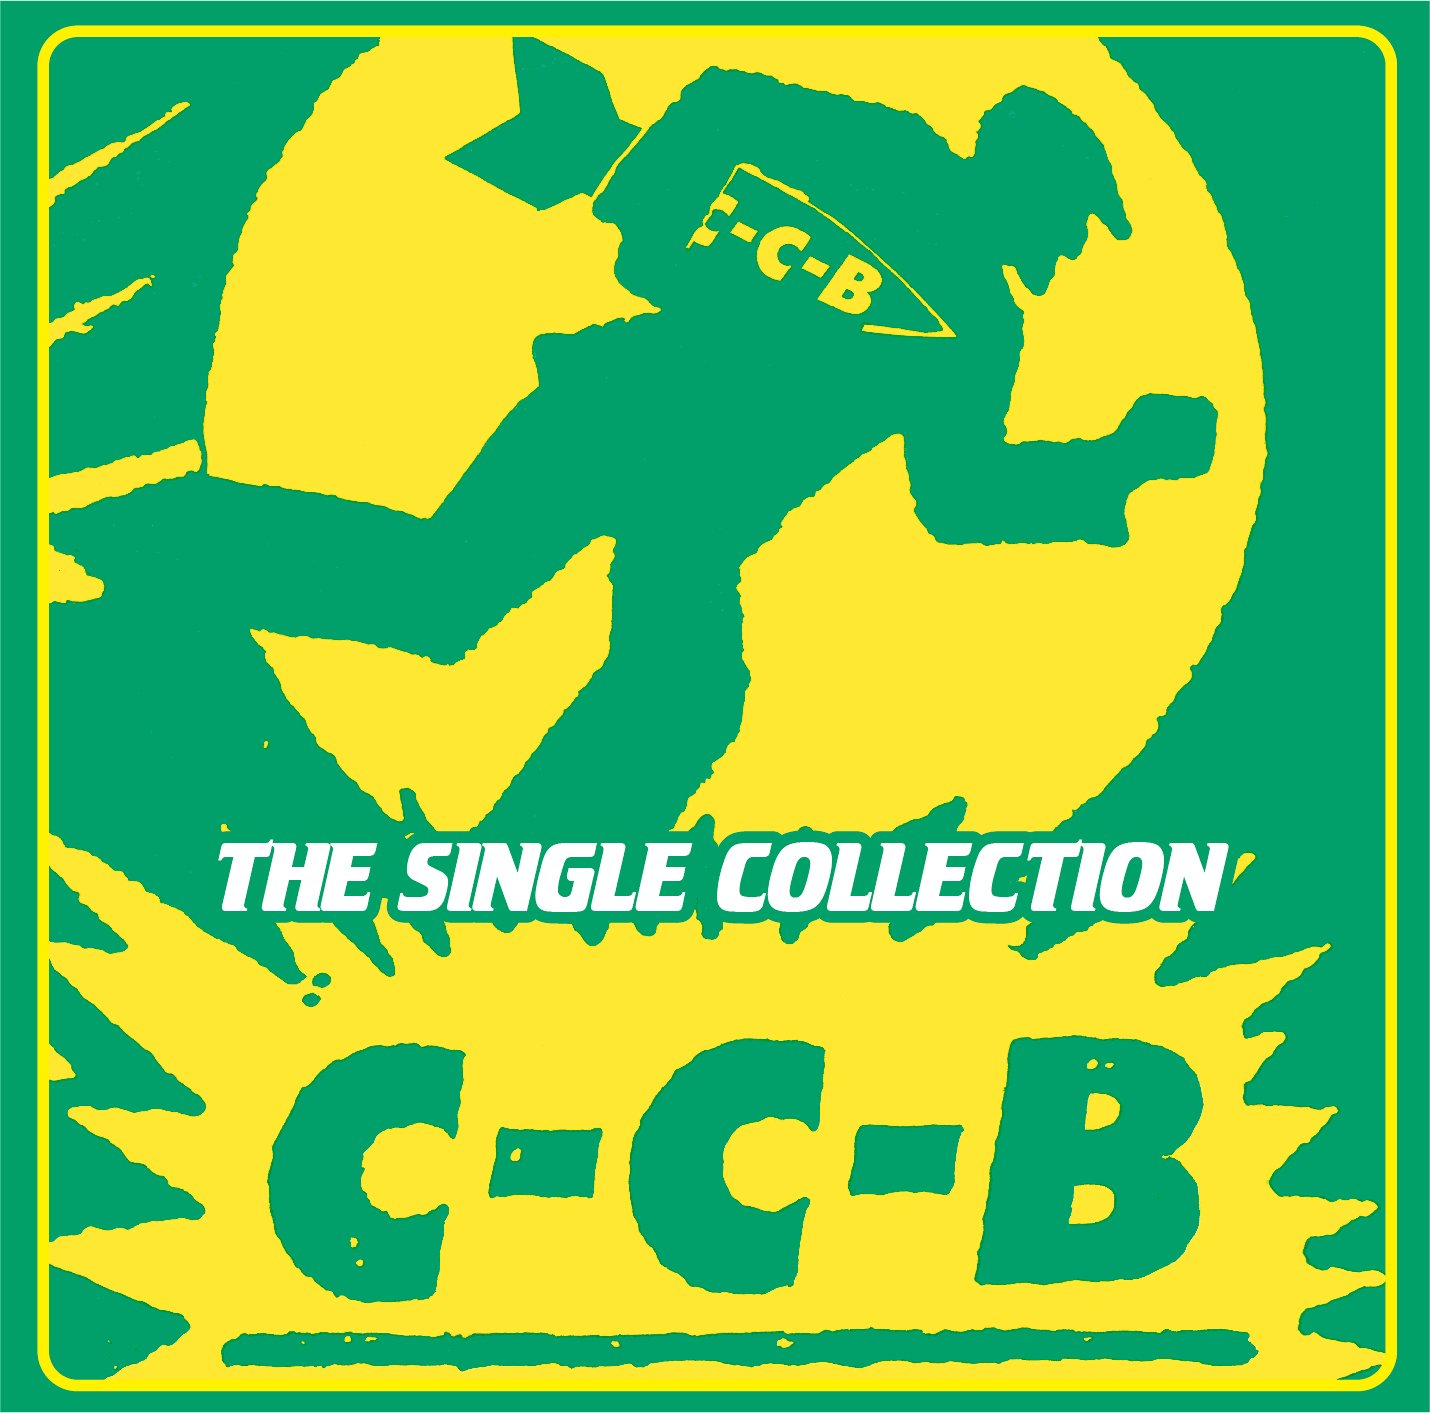 デビュー40周年を迎えたC-C-B 初のシングルコレクション発売決定 ...